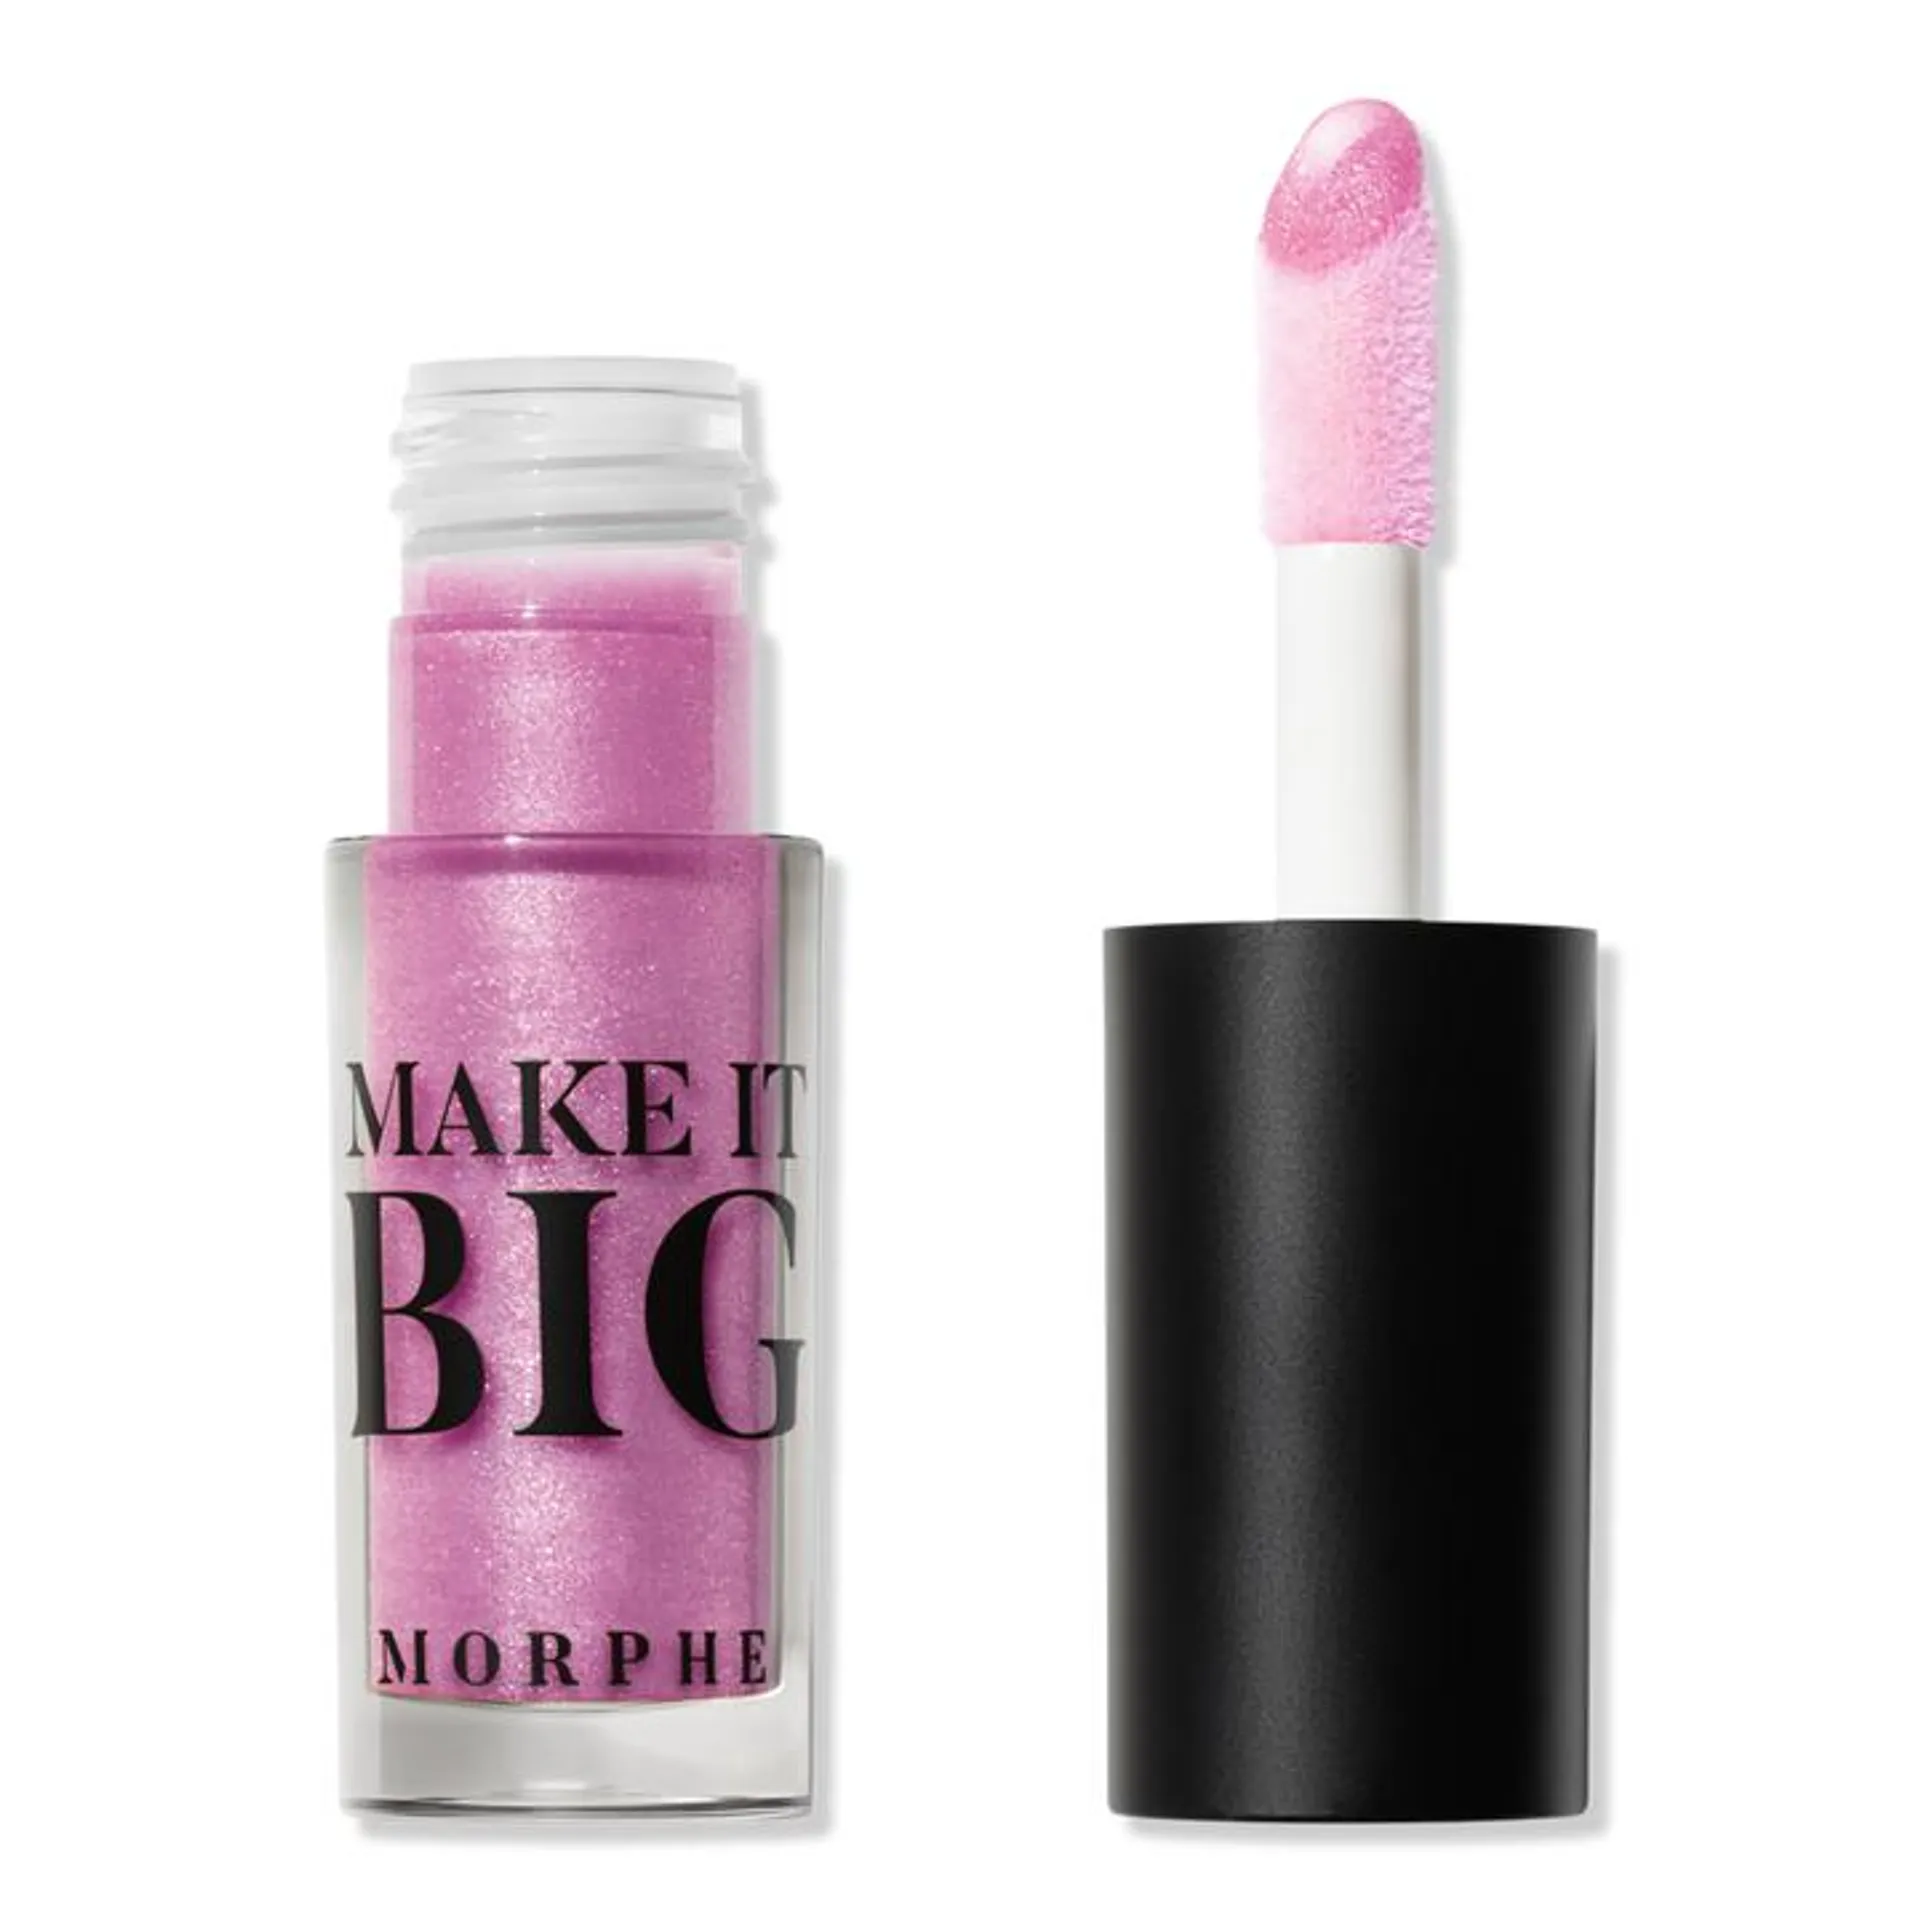 Make It Big Plumping Lip Gloss